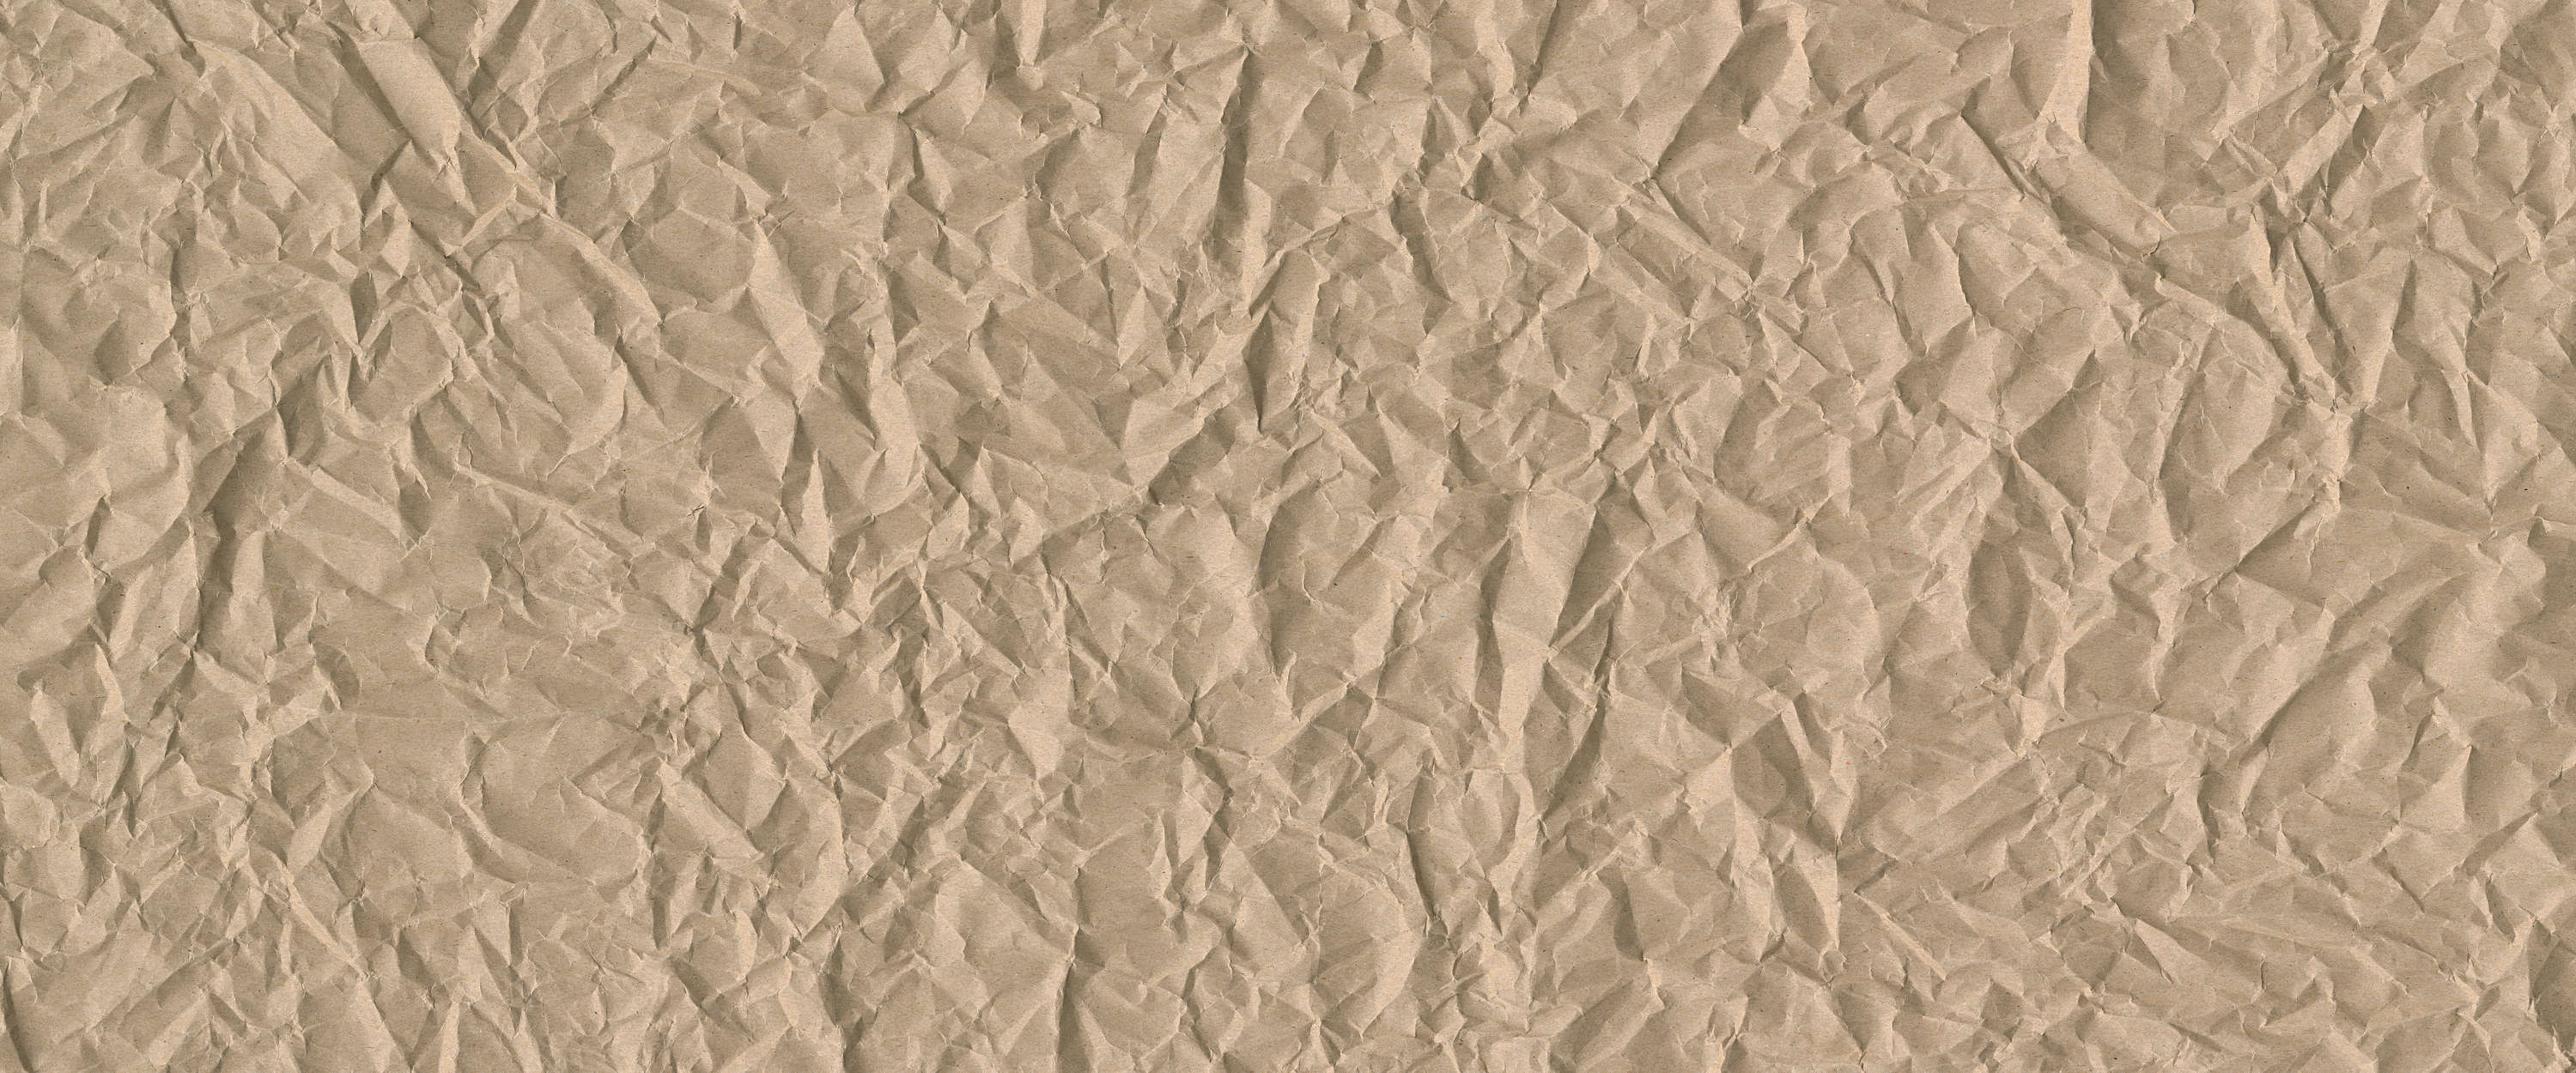             Fotomurali con superficie dall'aspetto emozionante - Crushed Paper (carta frantumata)
        